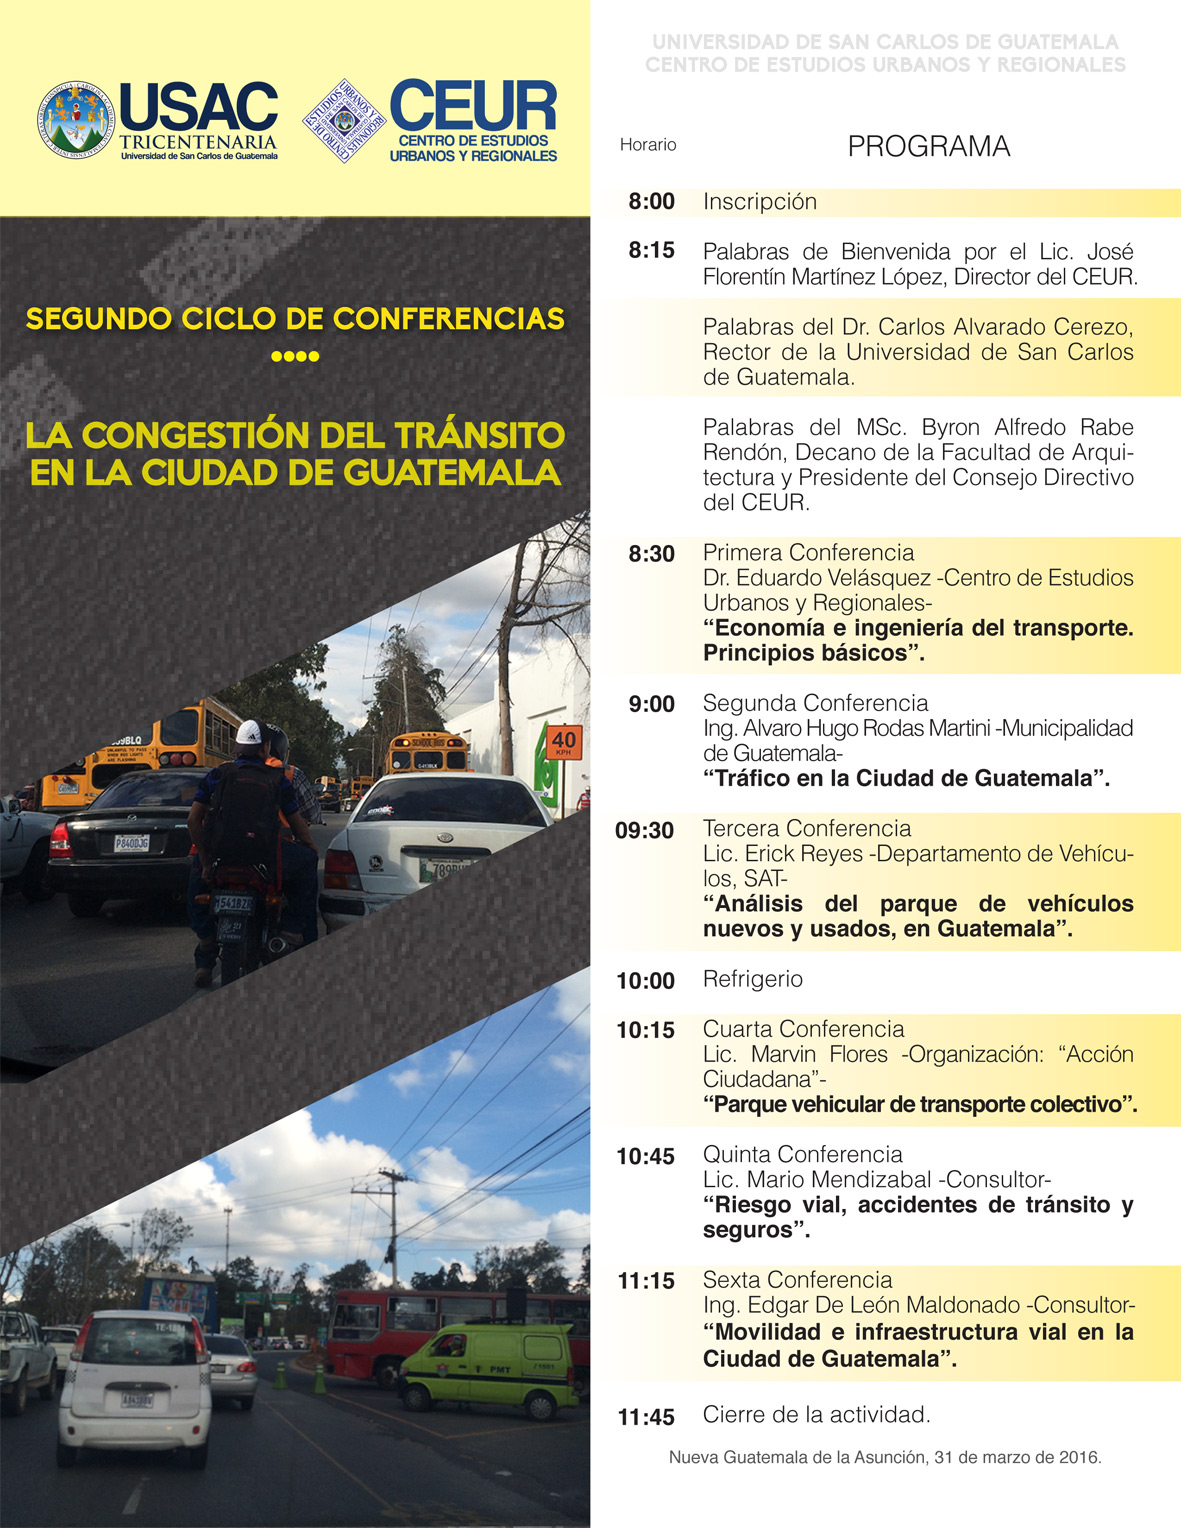 La congestión del tránsito en la Ciudad de Guatemala